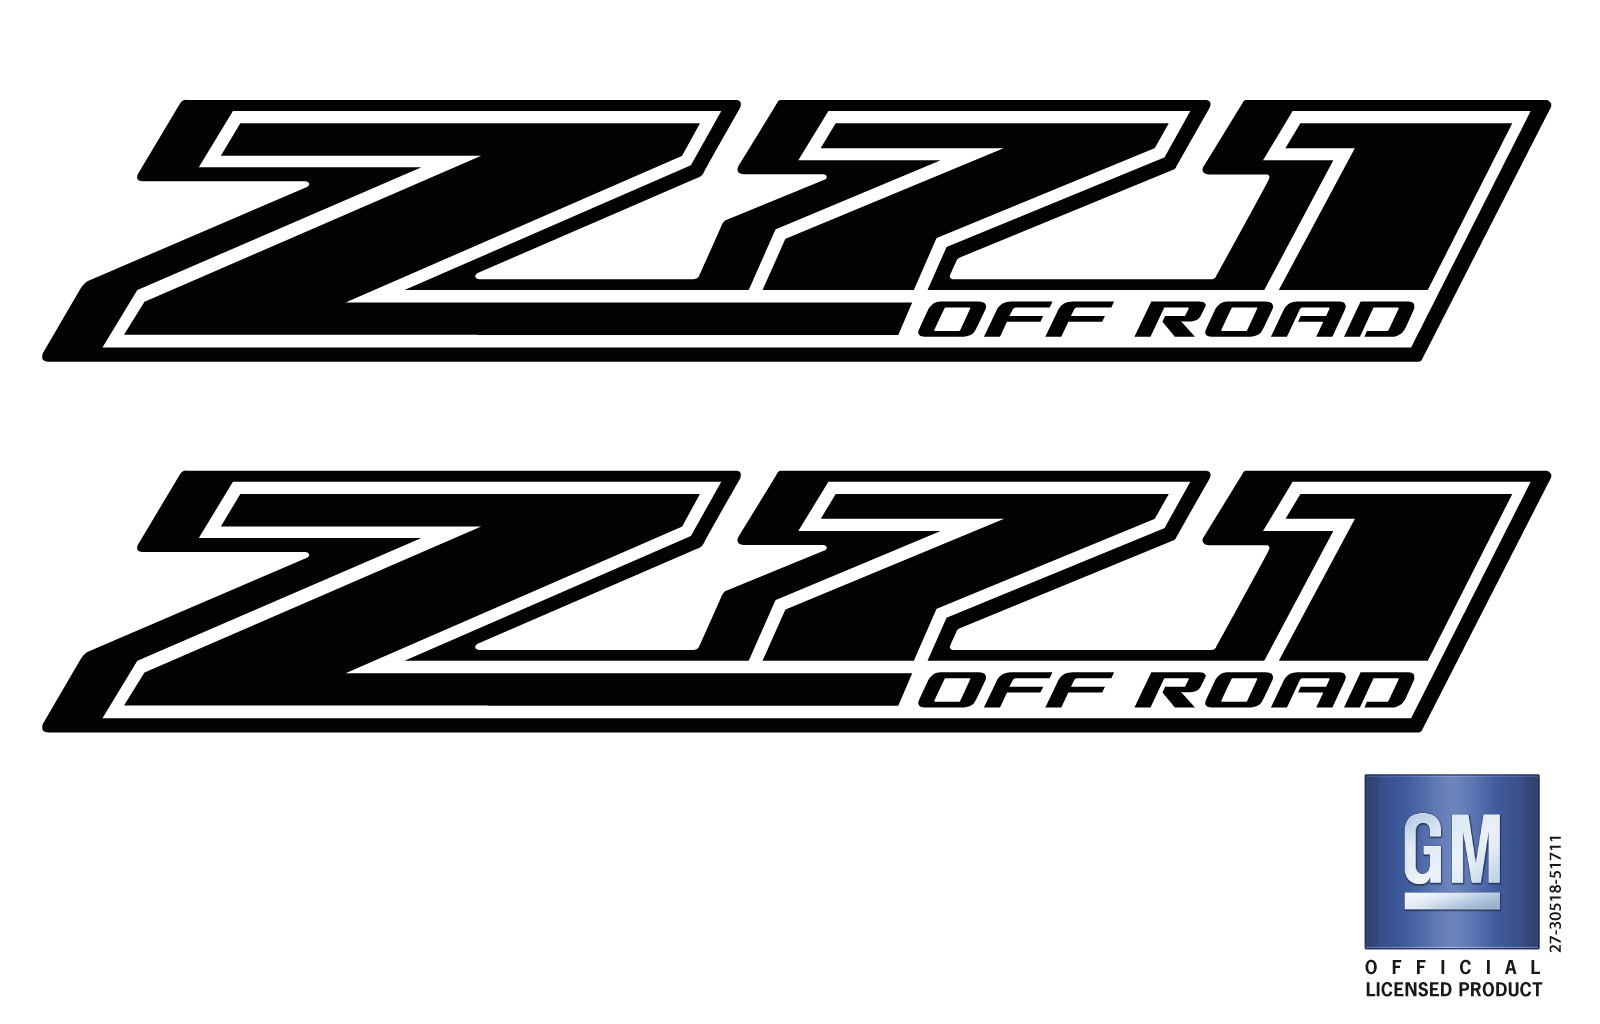 Z71 Off Road Decals Stickers  Compatible With Chevy Colorado Silverado 1500 2500 